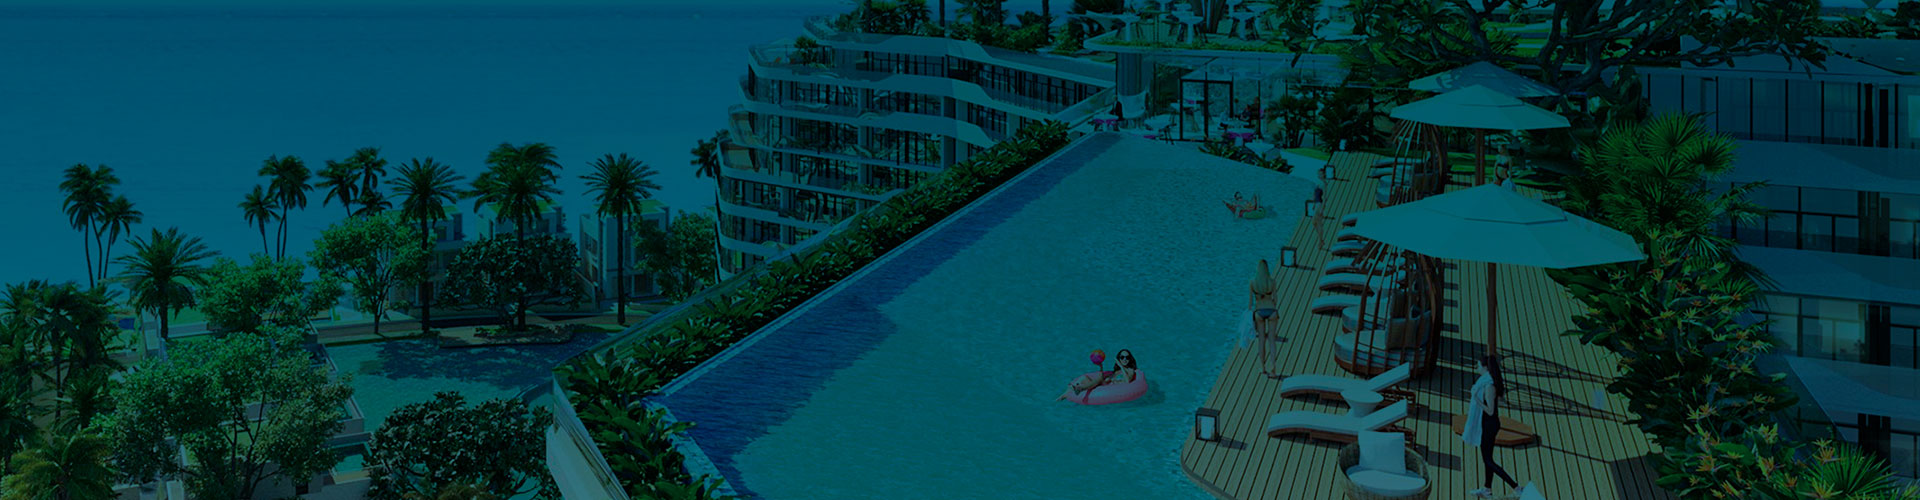 Những bảo chứng vàng cho nhà đầu tư Charm Resort Hồ Tràm